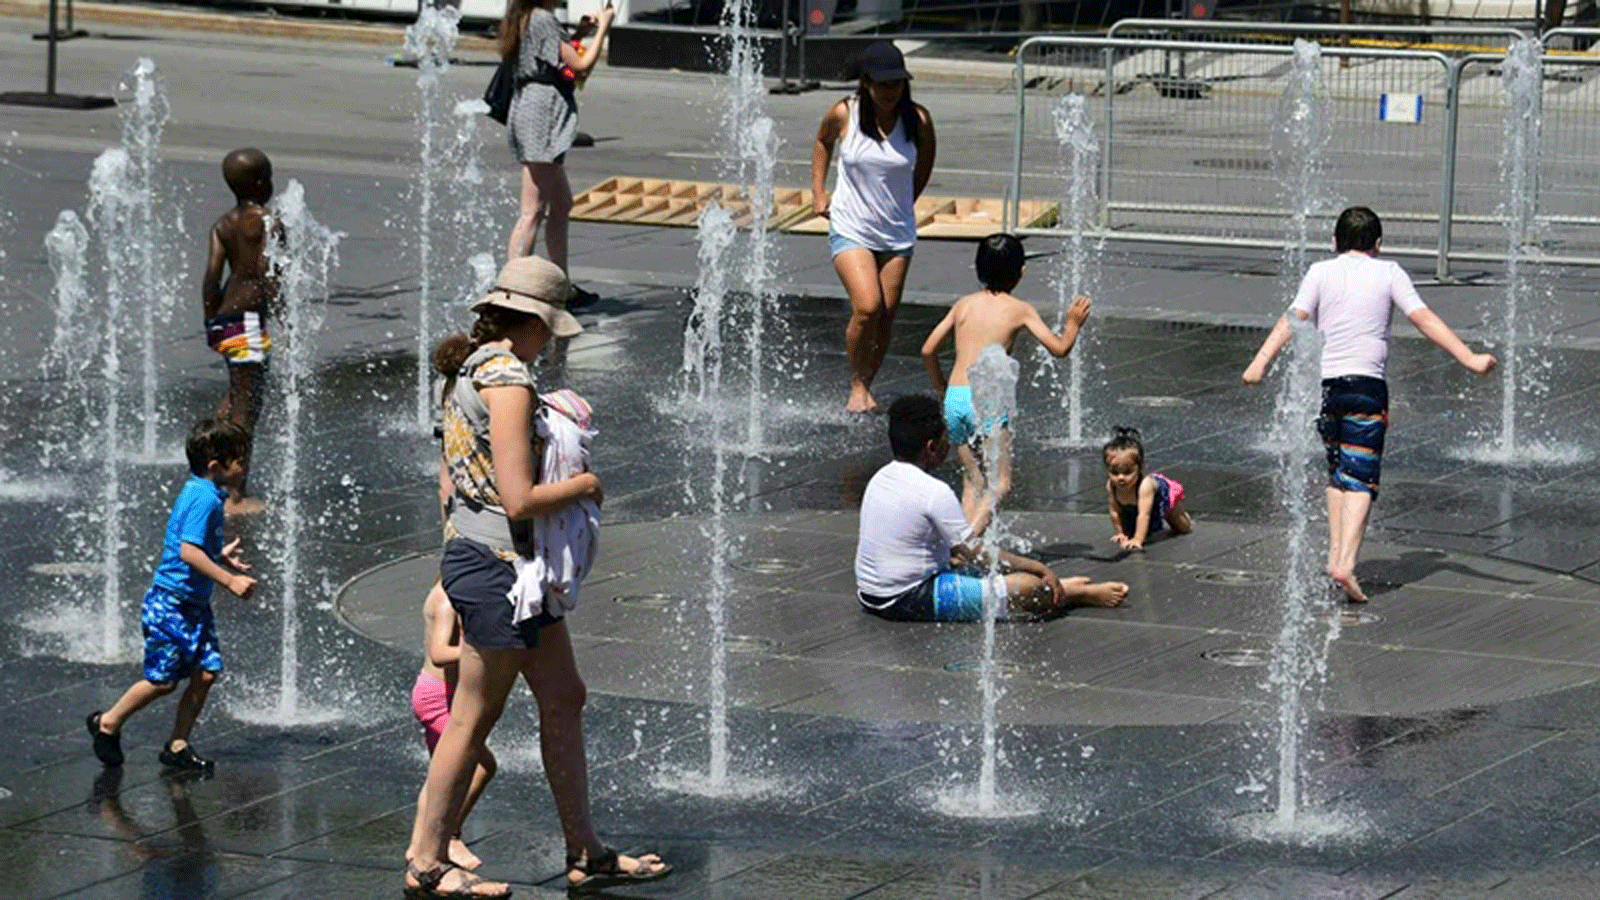 نساء وأطفال يلعبون في نوافير المياه هرباً من الحرّ في ساحة الفنون بمونتريال/ كندا يوم الثلاثاء 3 تموز/ يوليو 2018